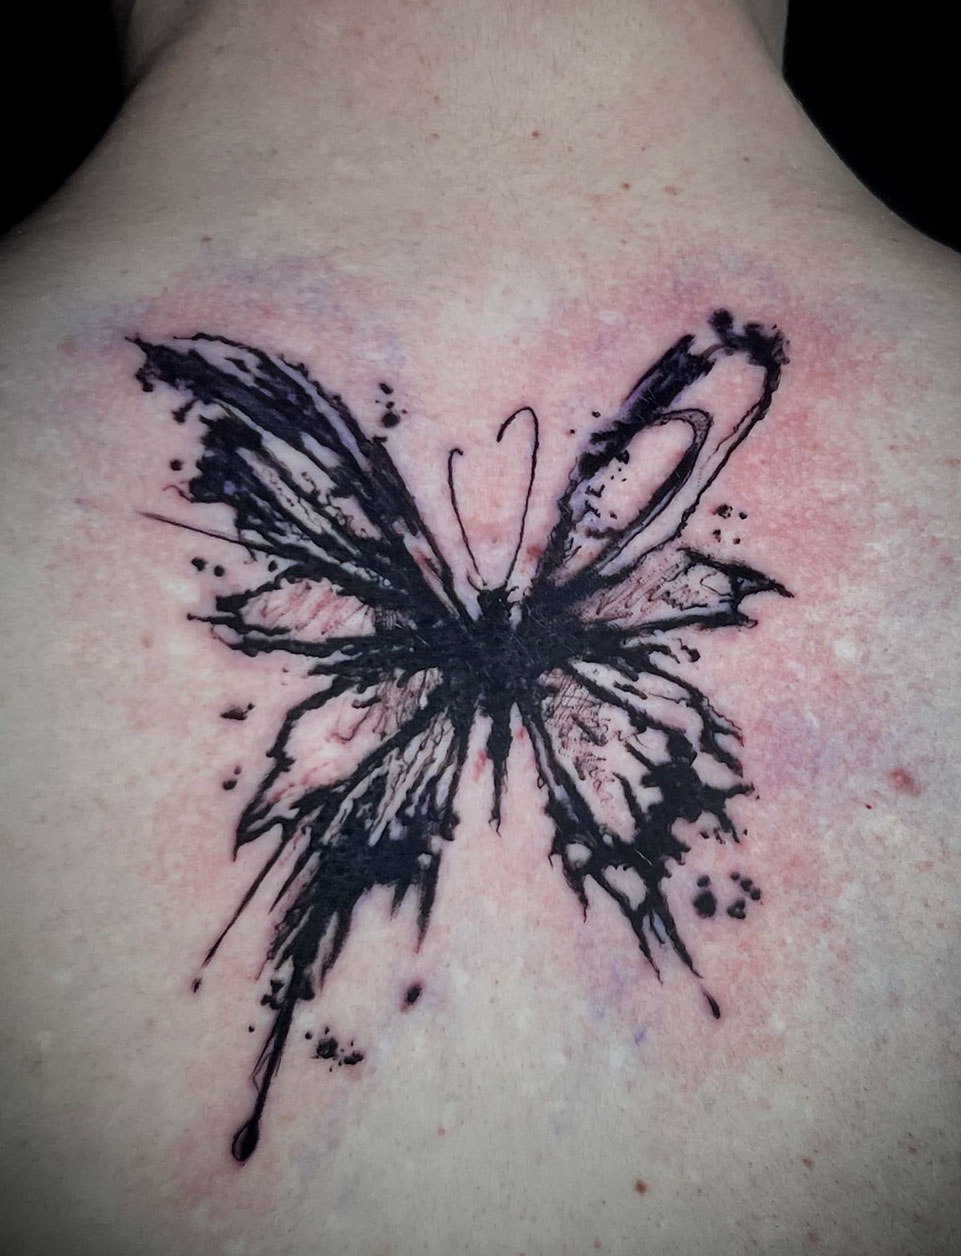 Tattoo Anansi Studio München Munich Haidhausen Vedran abstract butterfly beautiful best blackwork sketchy - Kopie